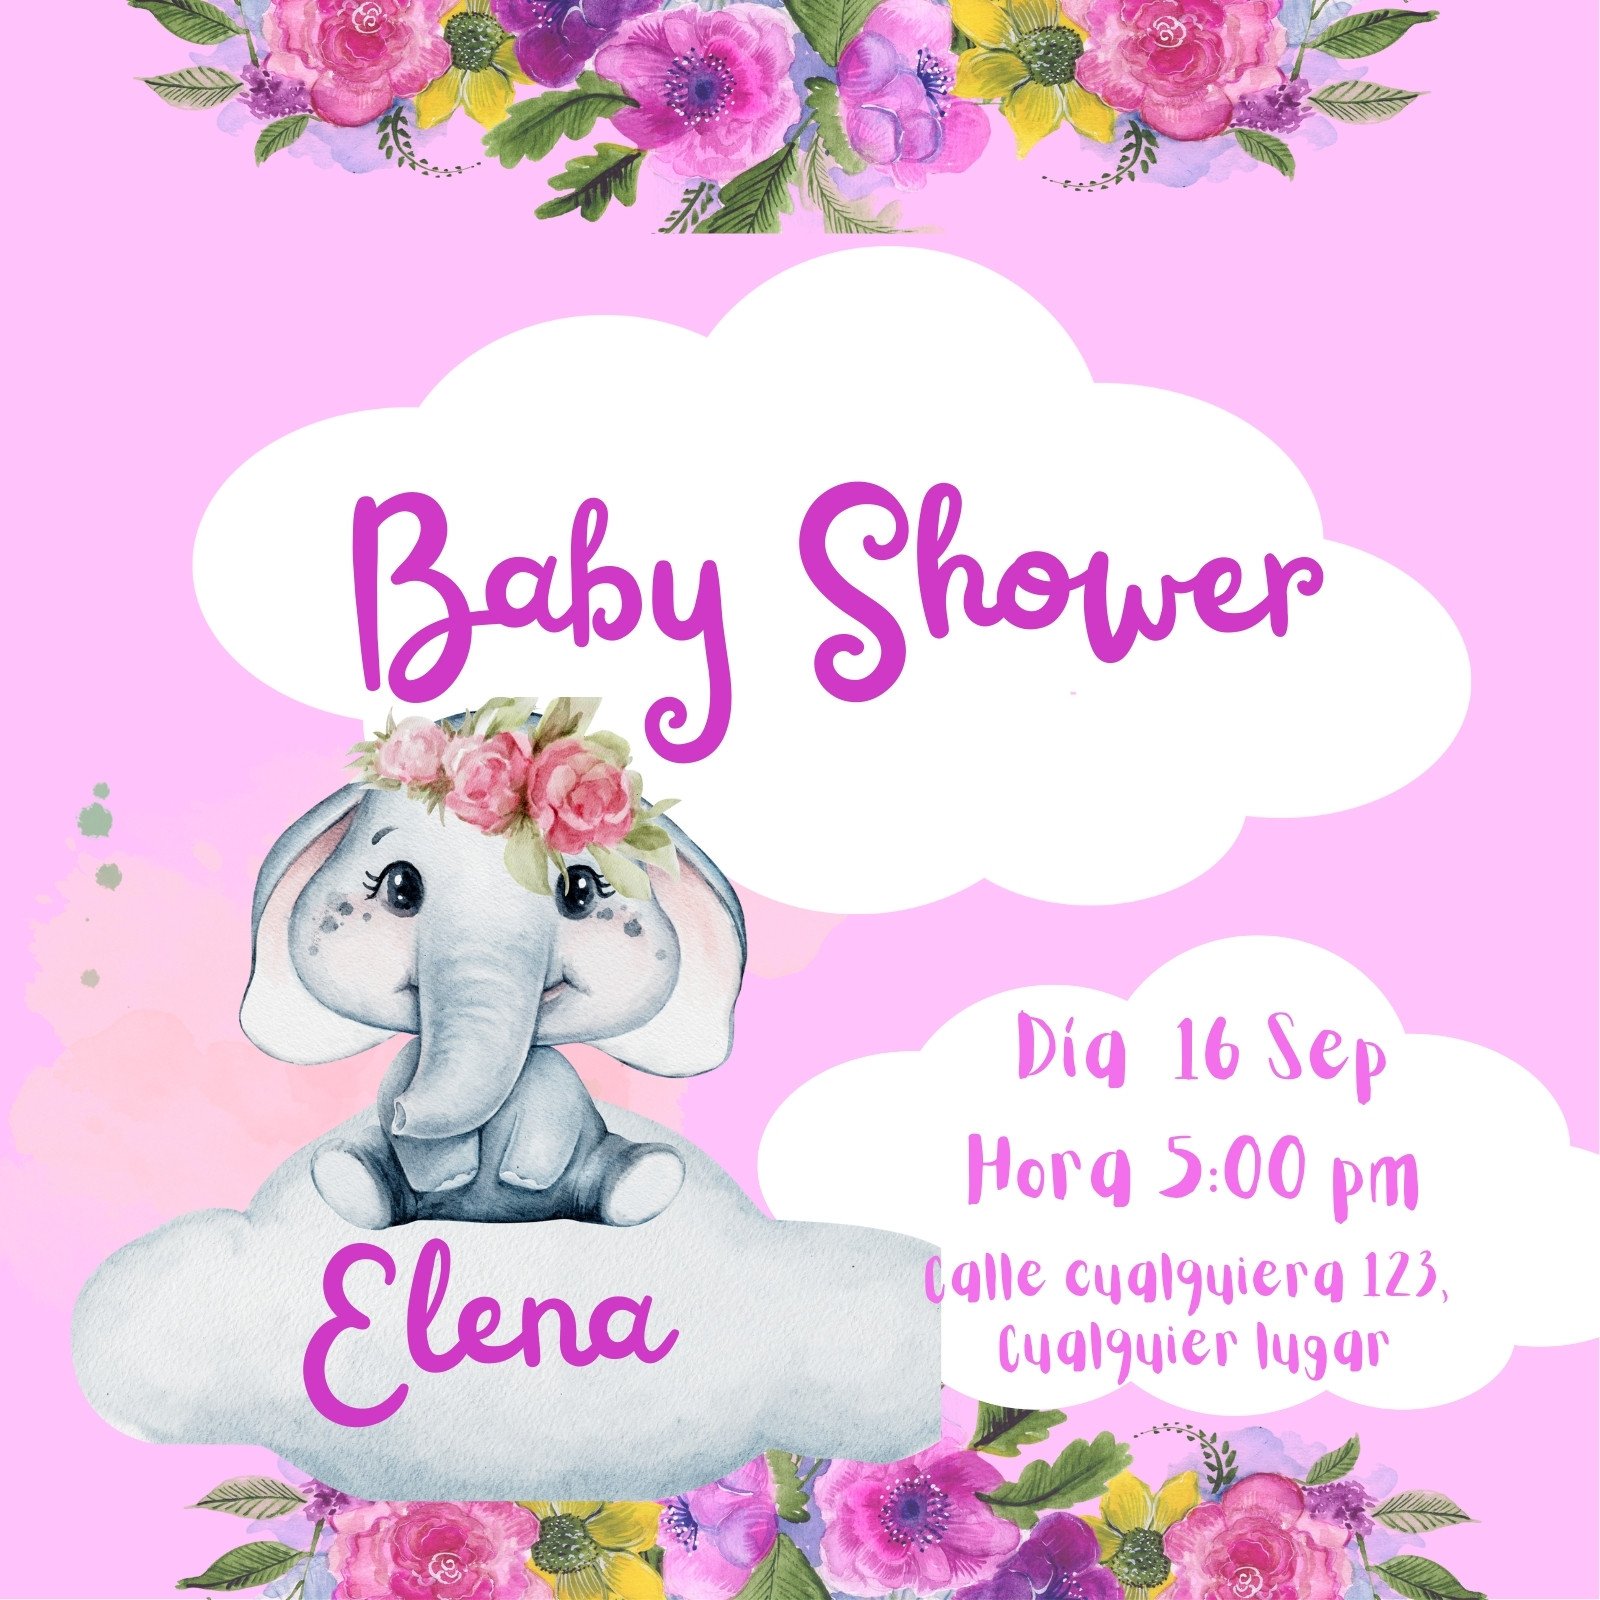 Plantillas para invitaciones de baby shower gratis | Canva